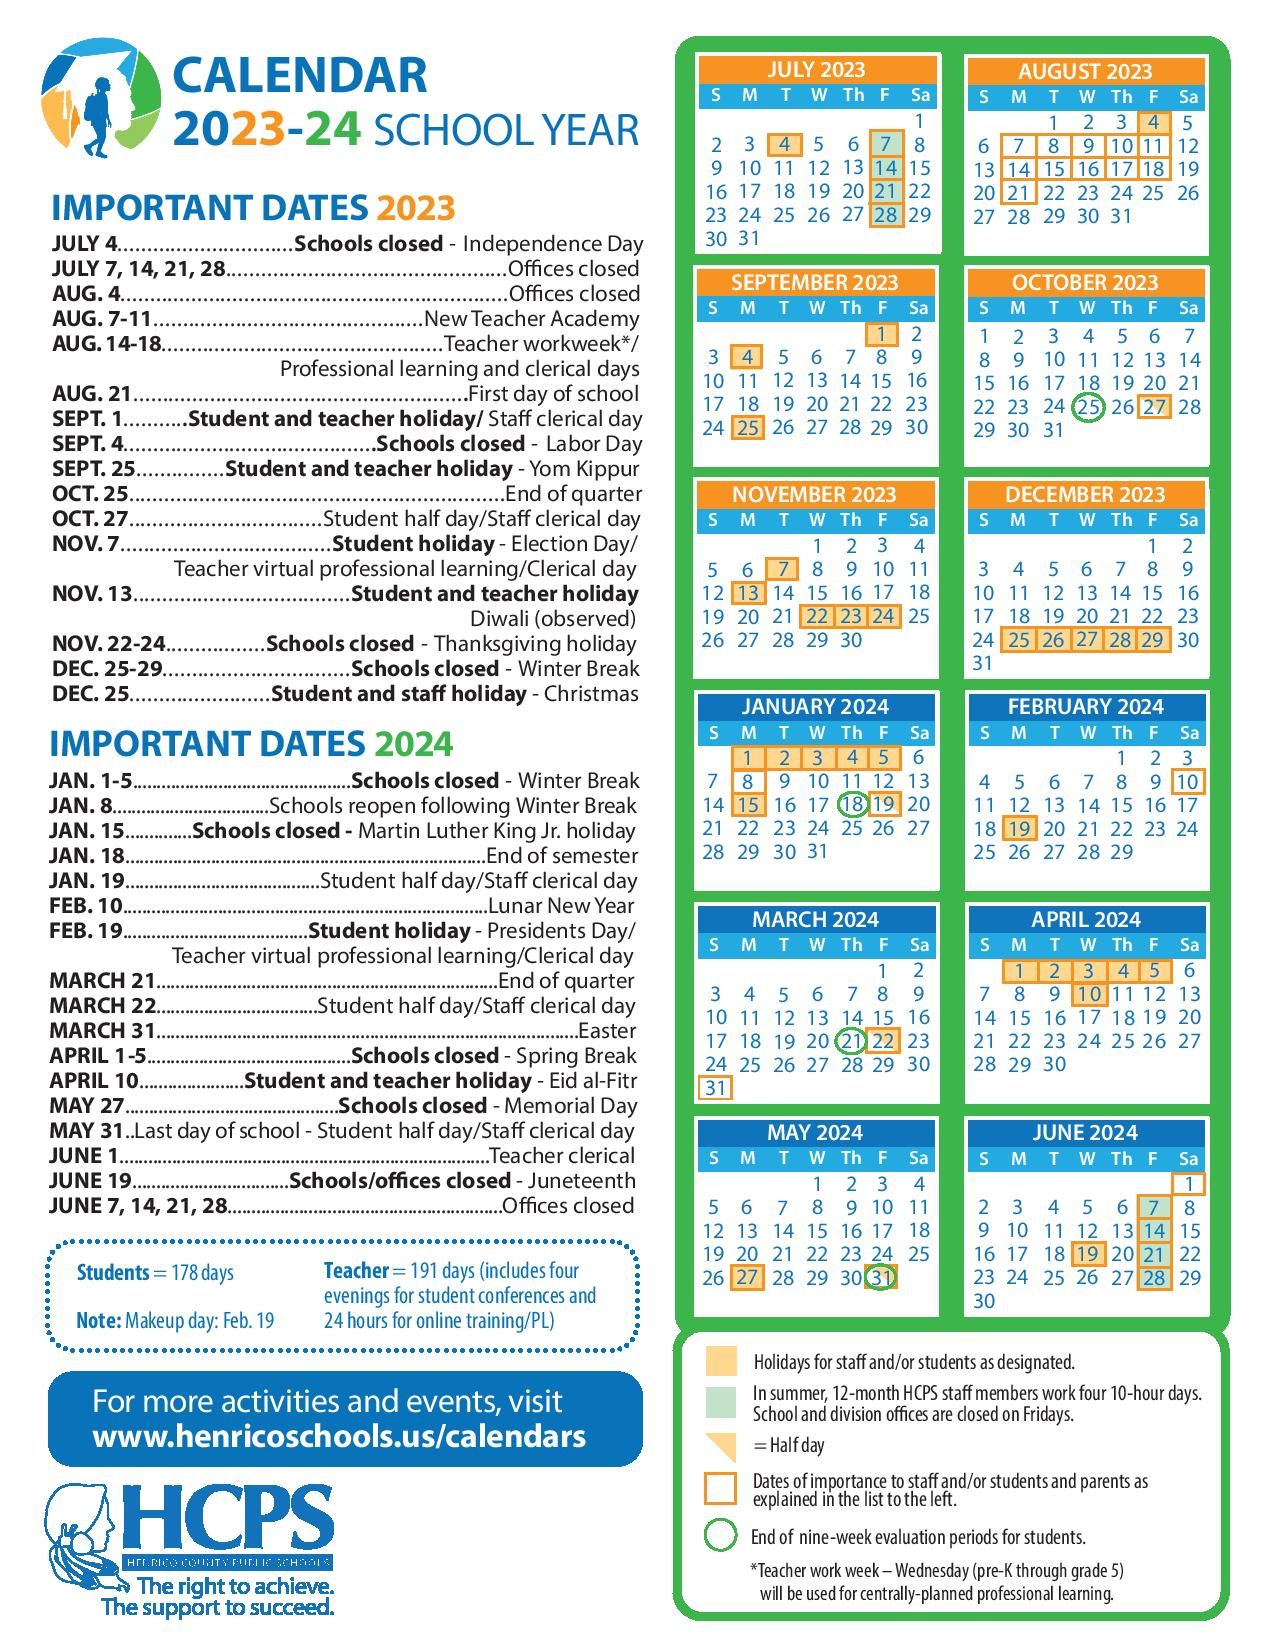 Henrico County Public Schools Calendar 